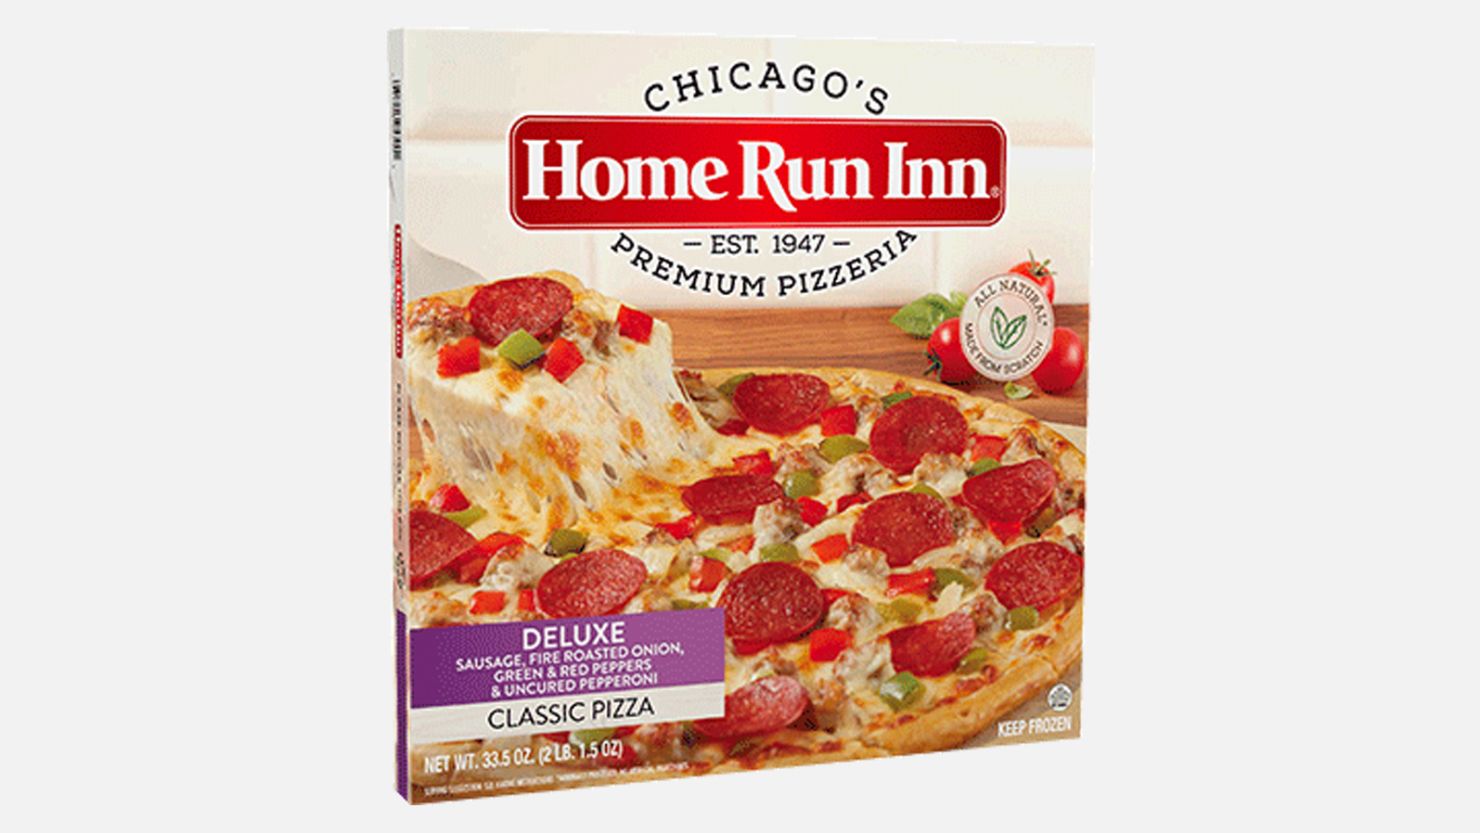 Home Run Inn frozen pizza recall 081522